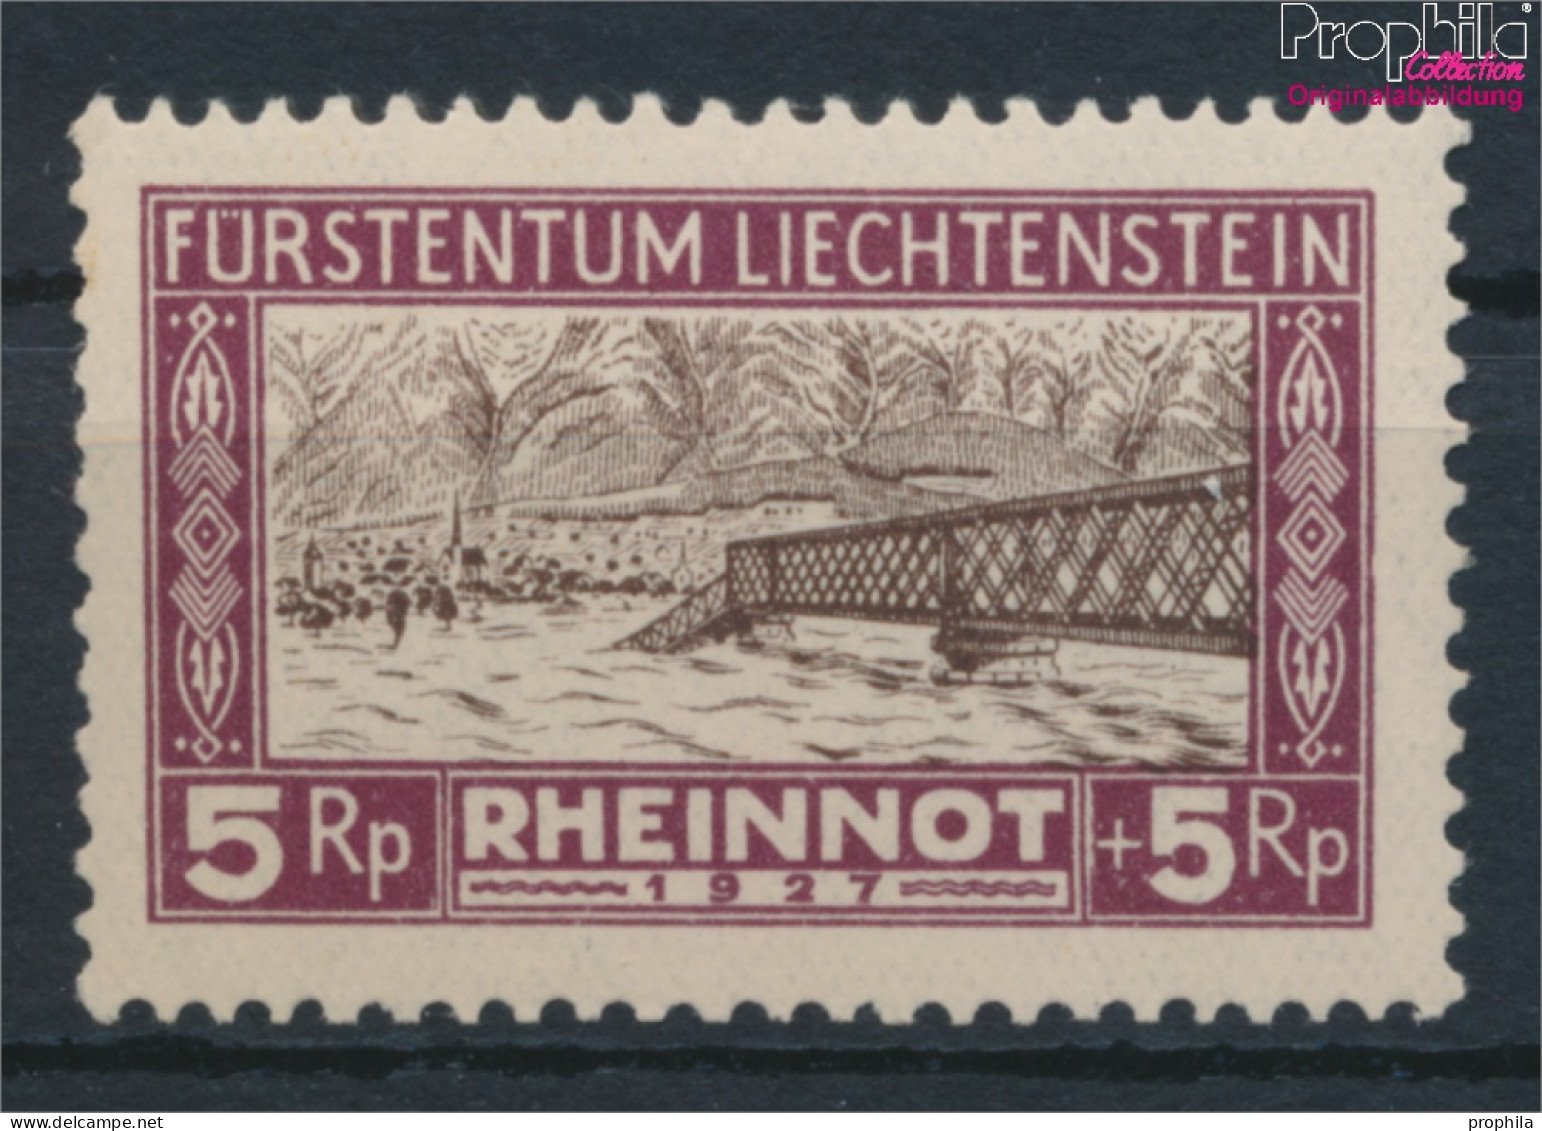 Liechtenstein 78 Postfrisch 1928 Hochwassergeschädigte (10377390 - Neufs